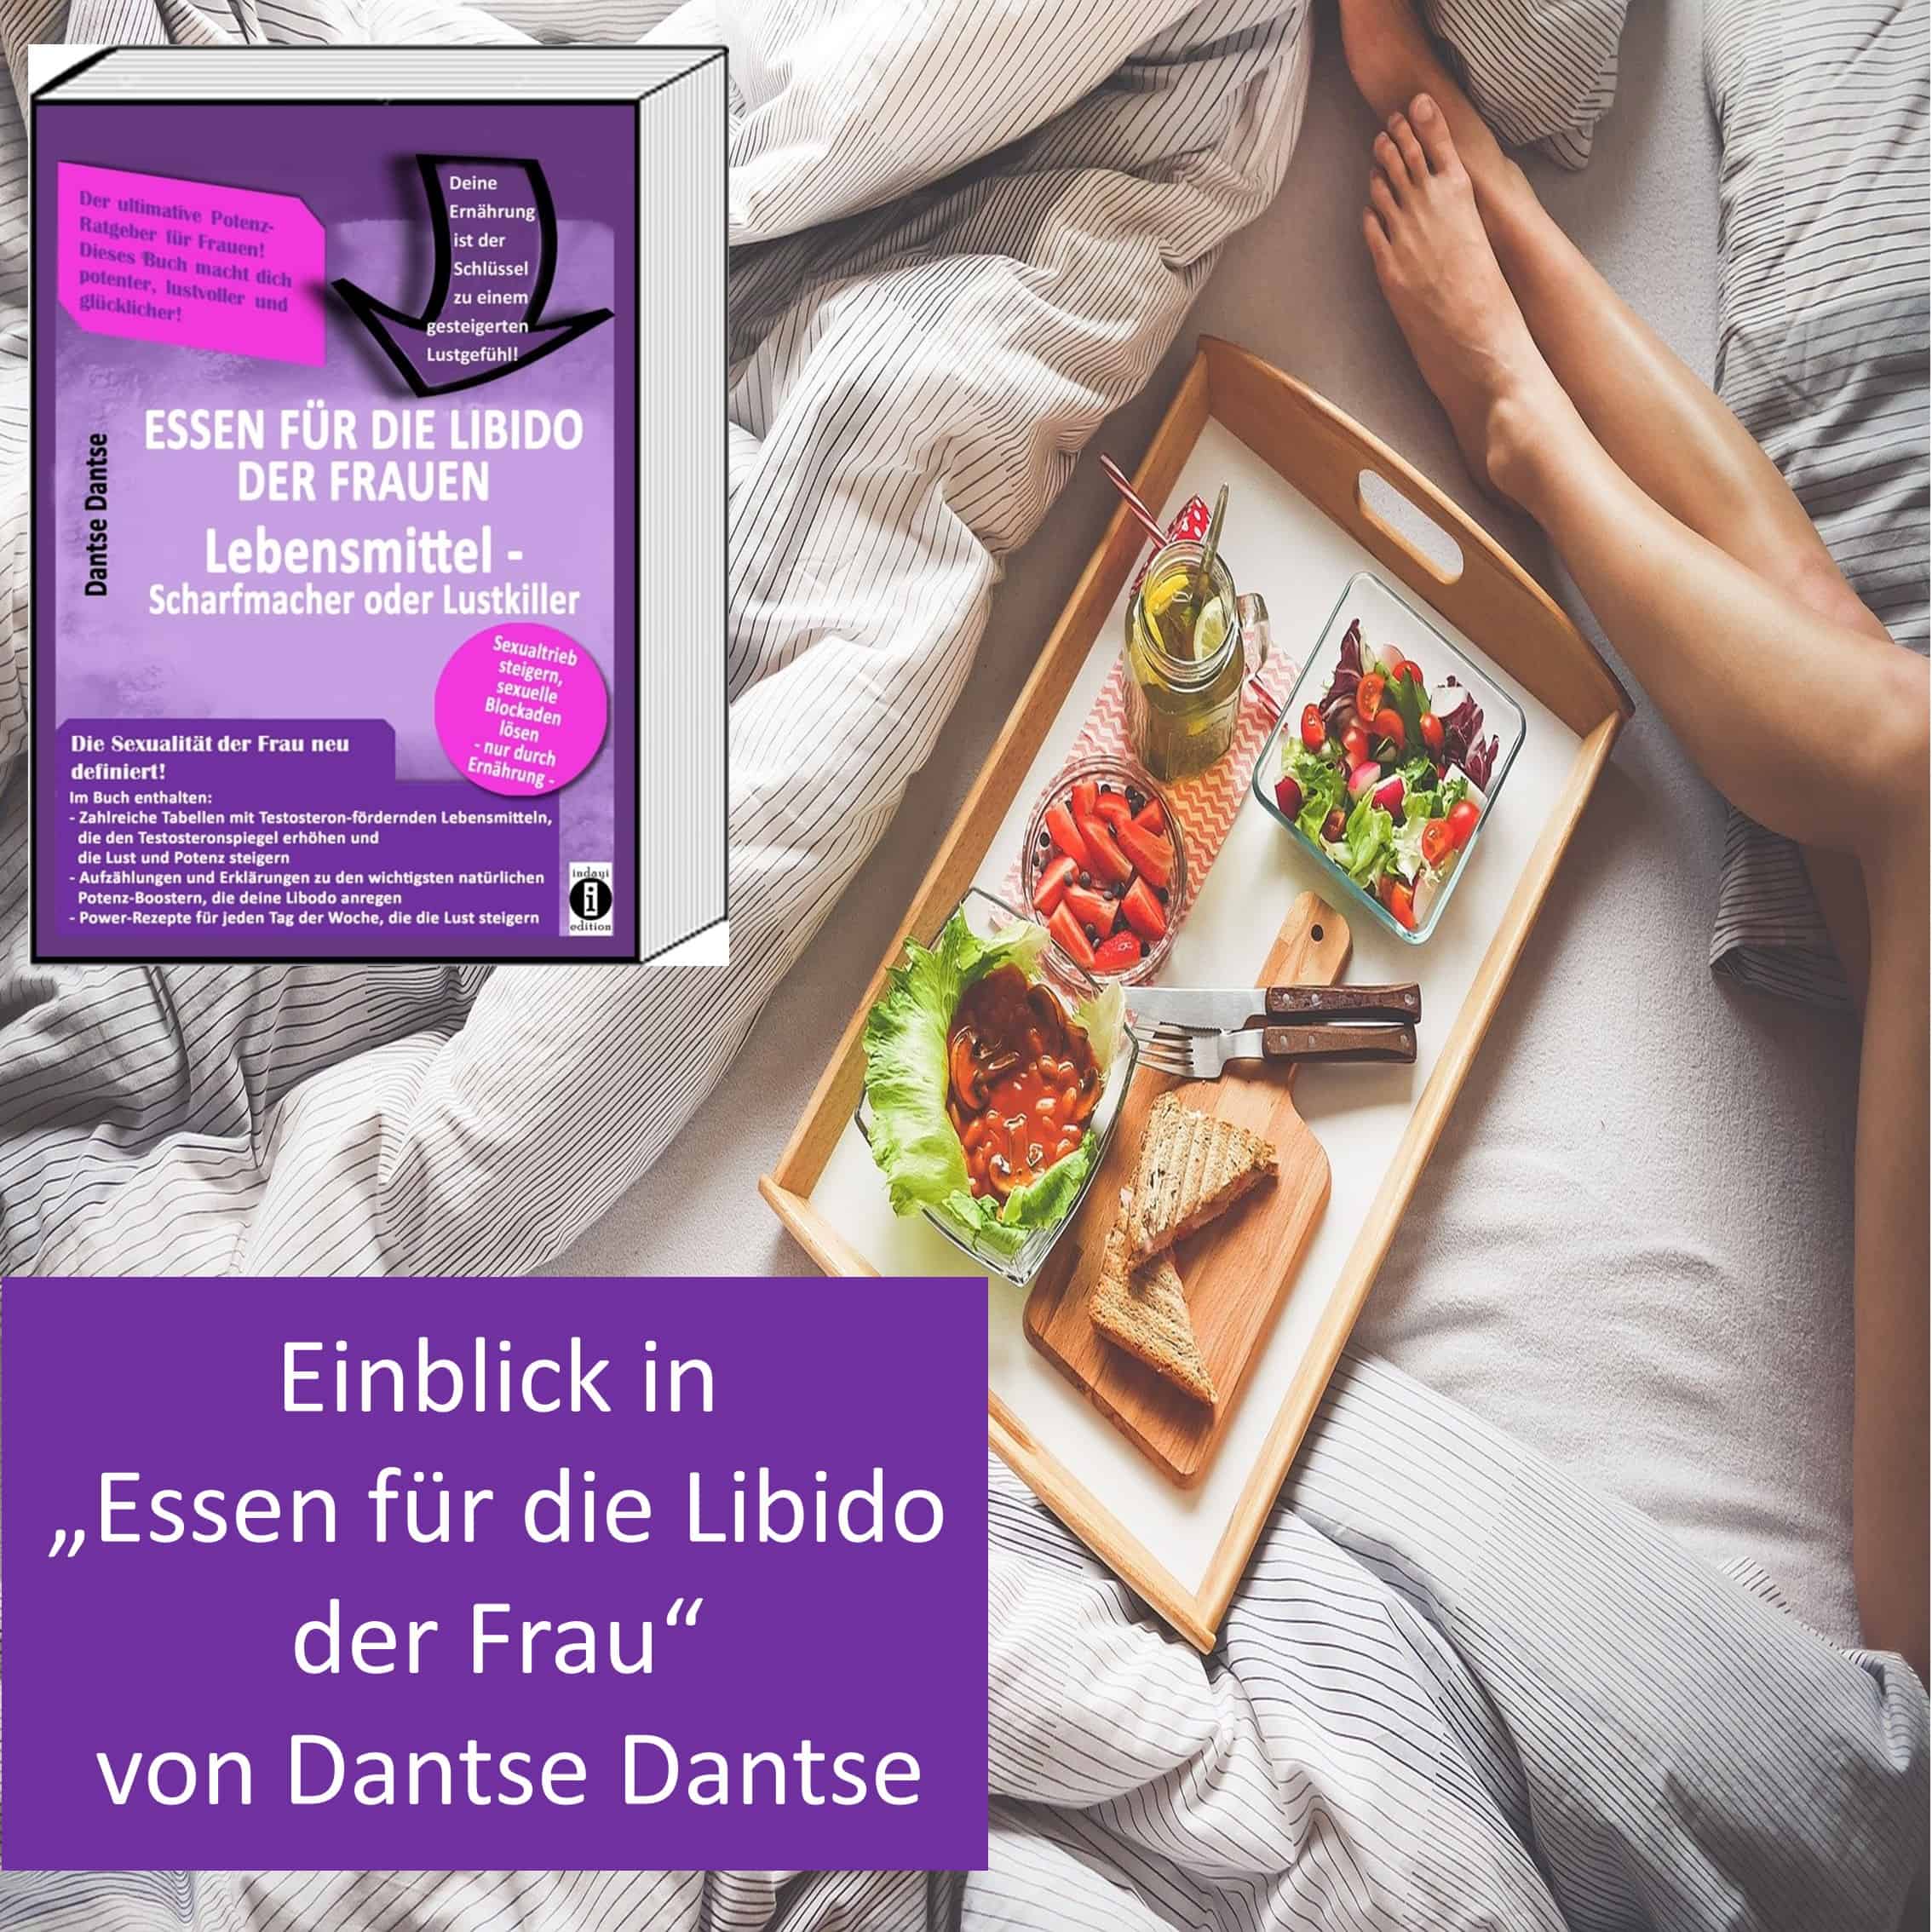 You are currently viewing Einblick “Essen für die Libido der Frau” von Dantse Dantse